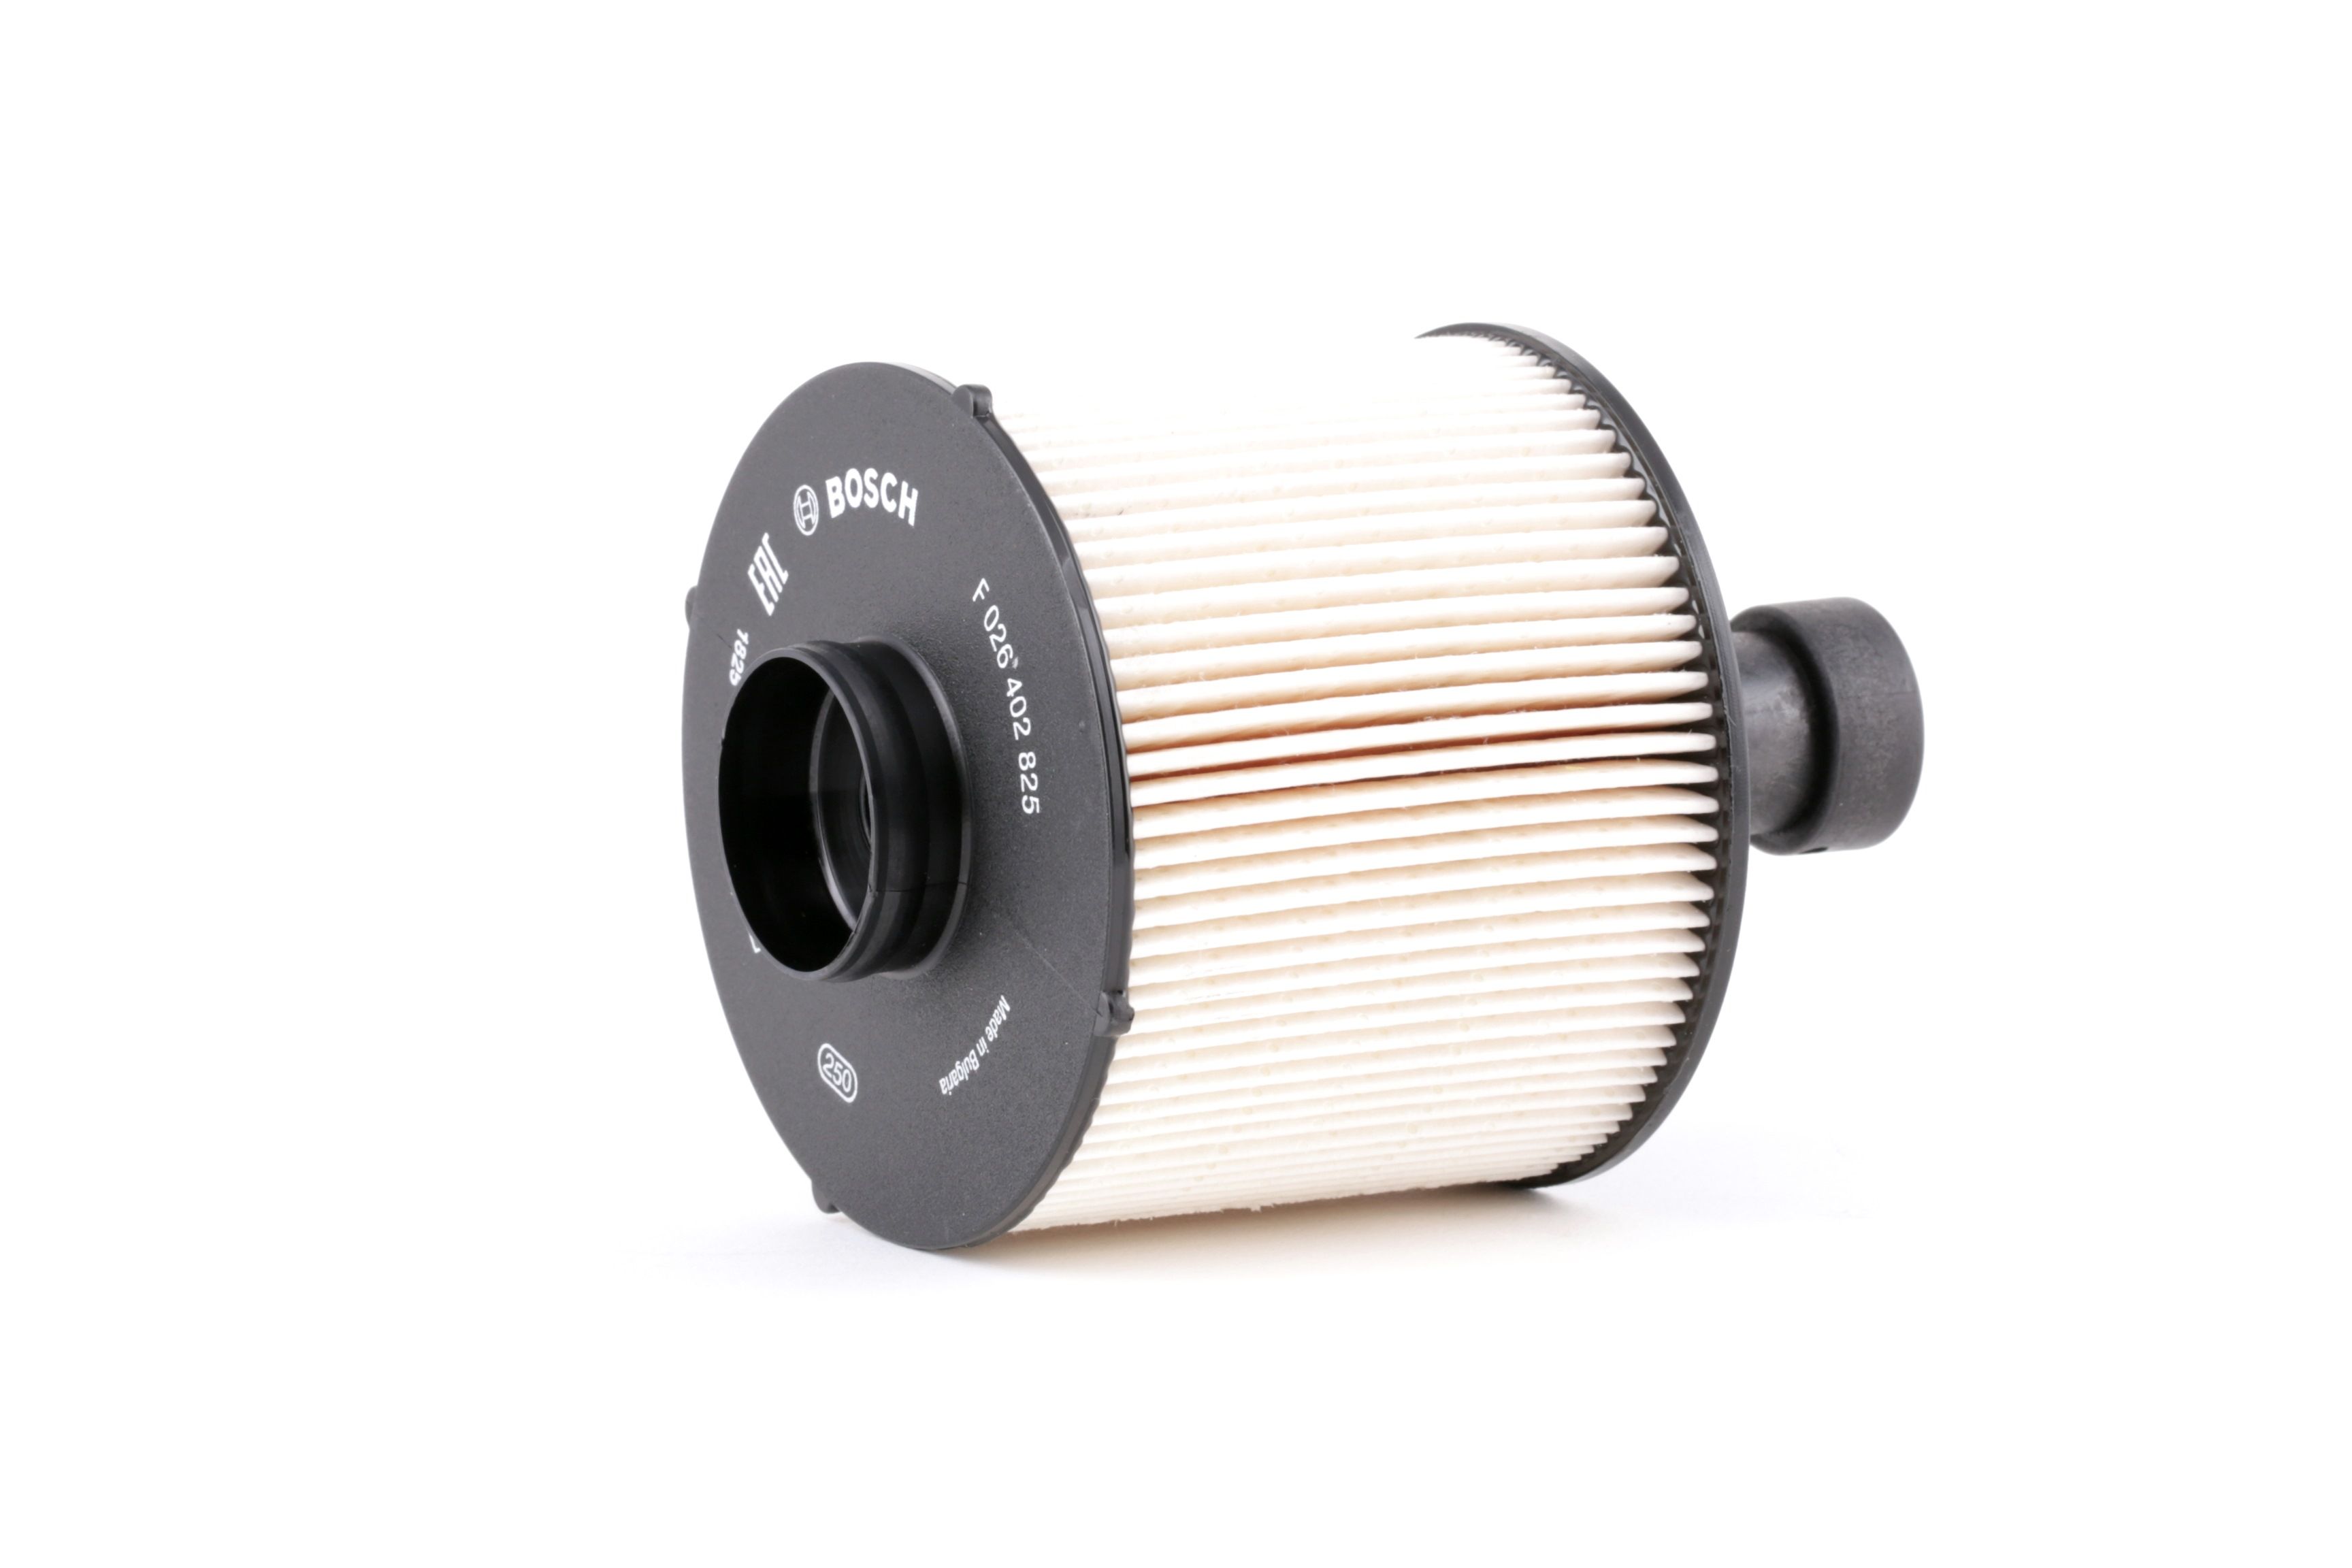 Palivový filtr Nissan v originální kvalitě BOSCH F 026 402 825